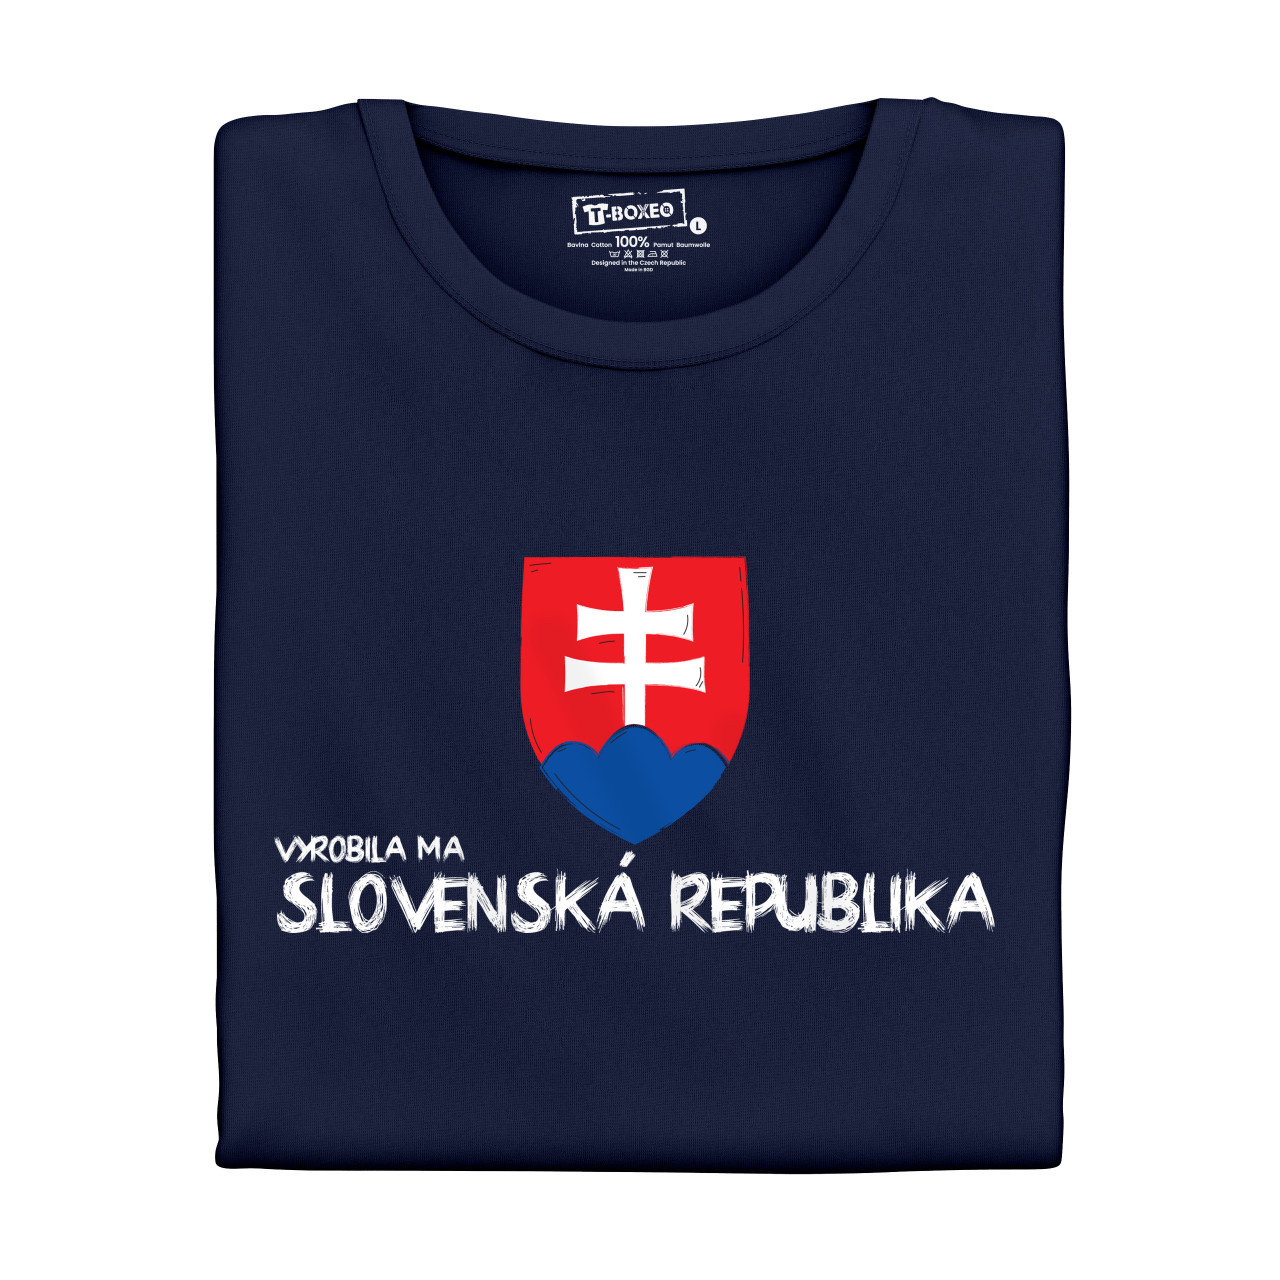 Dámské tričko s potiskem "Vyrobila mě SK" SK